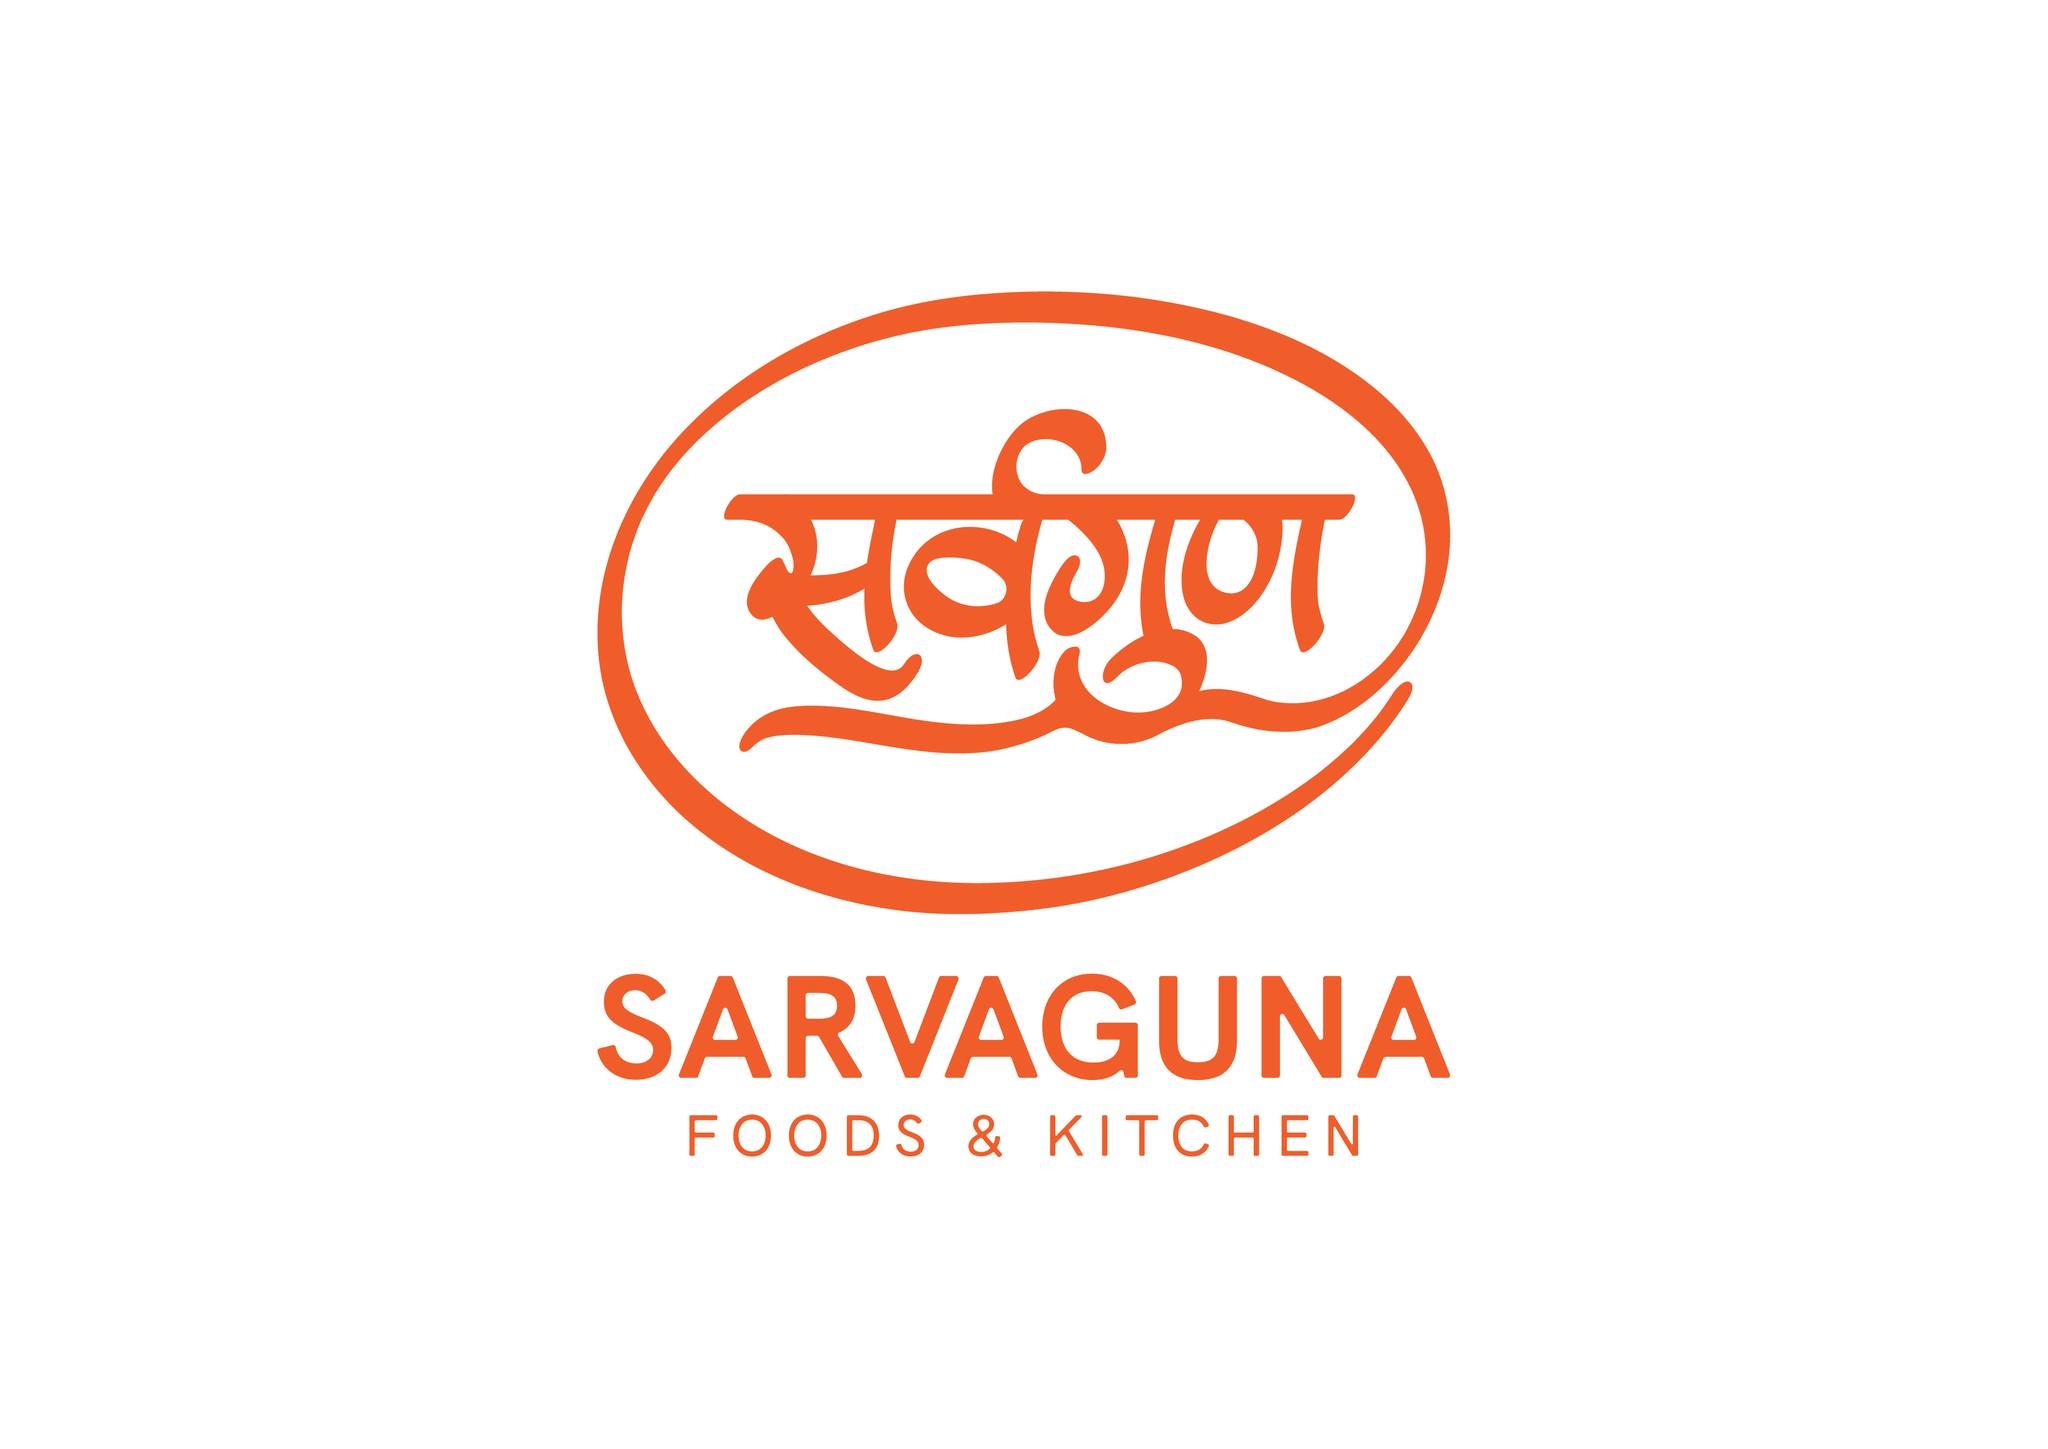 Sarvaguna Foods & Kitchen